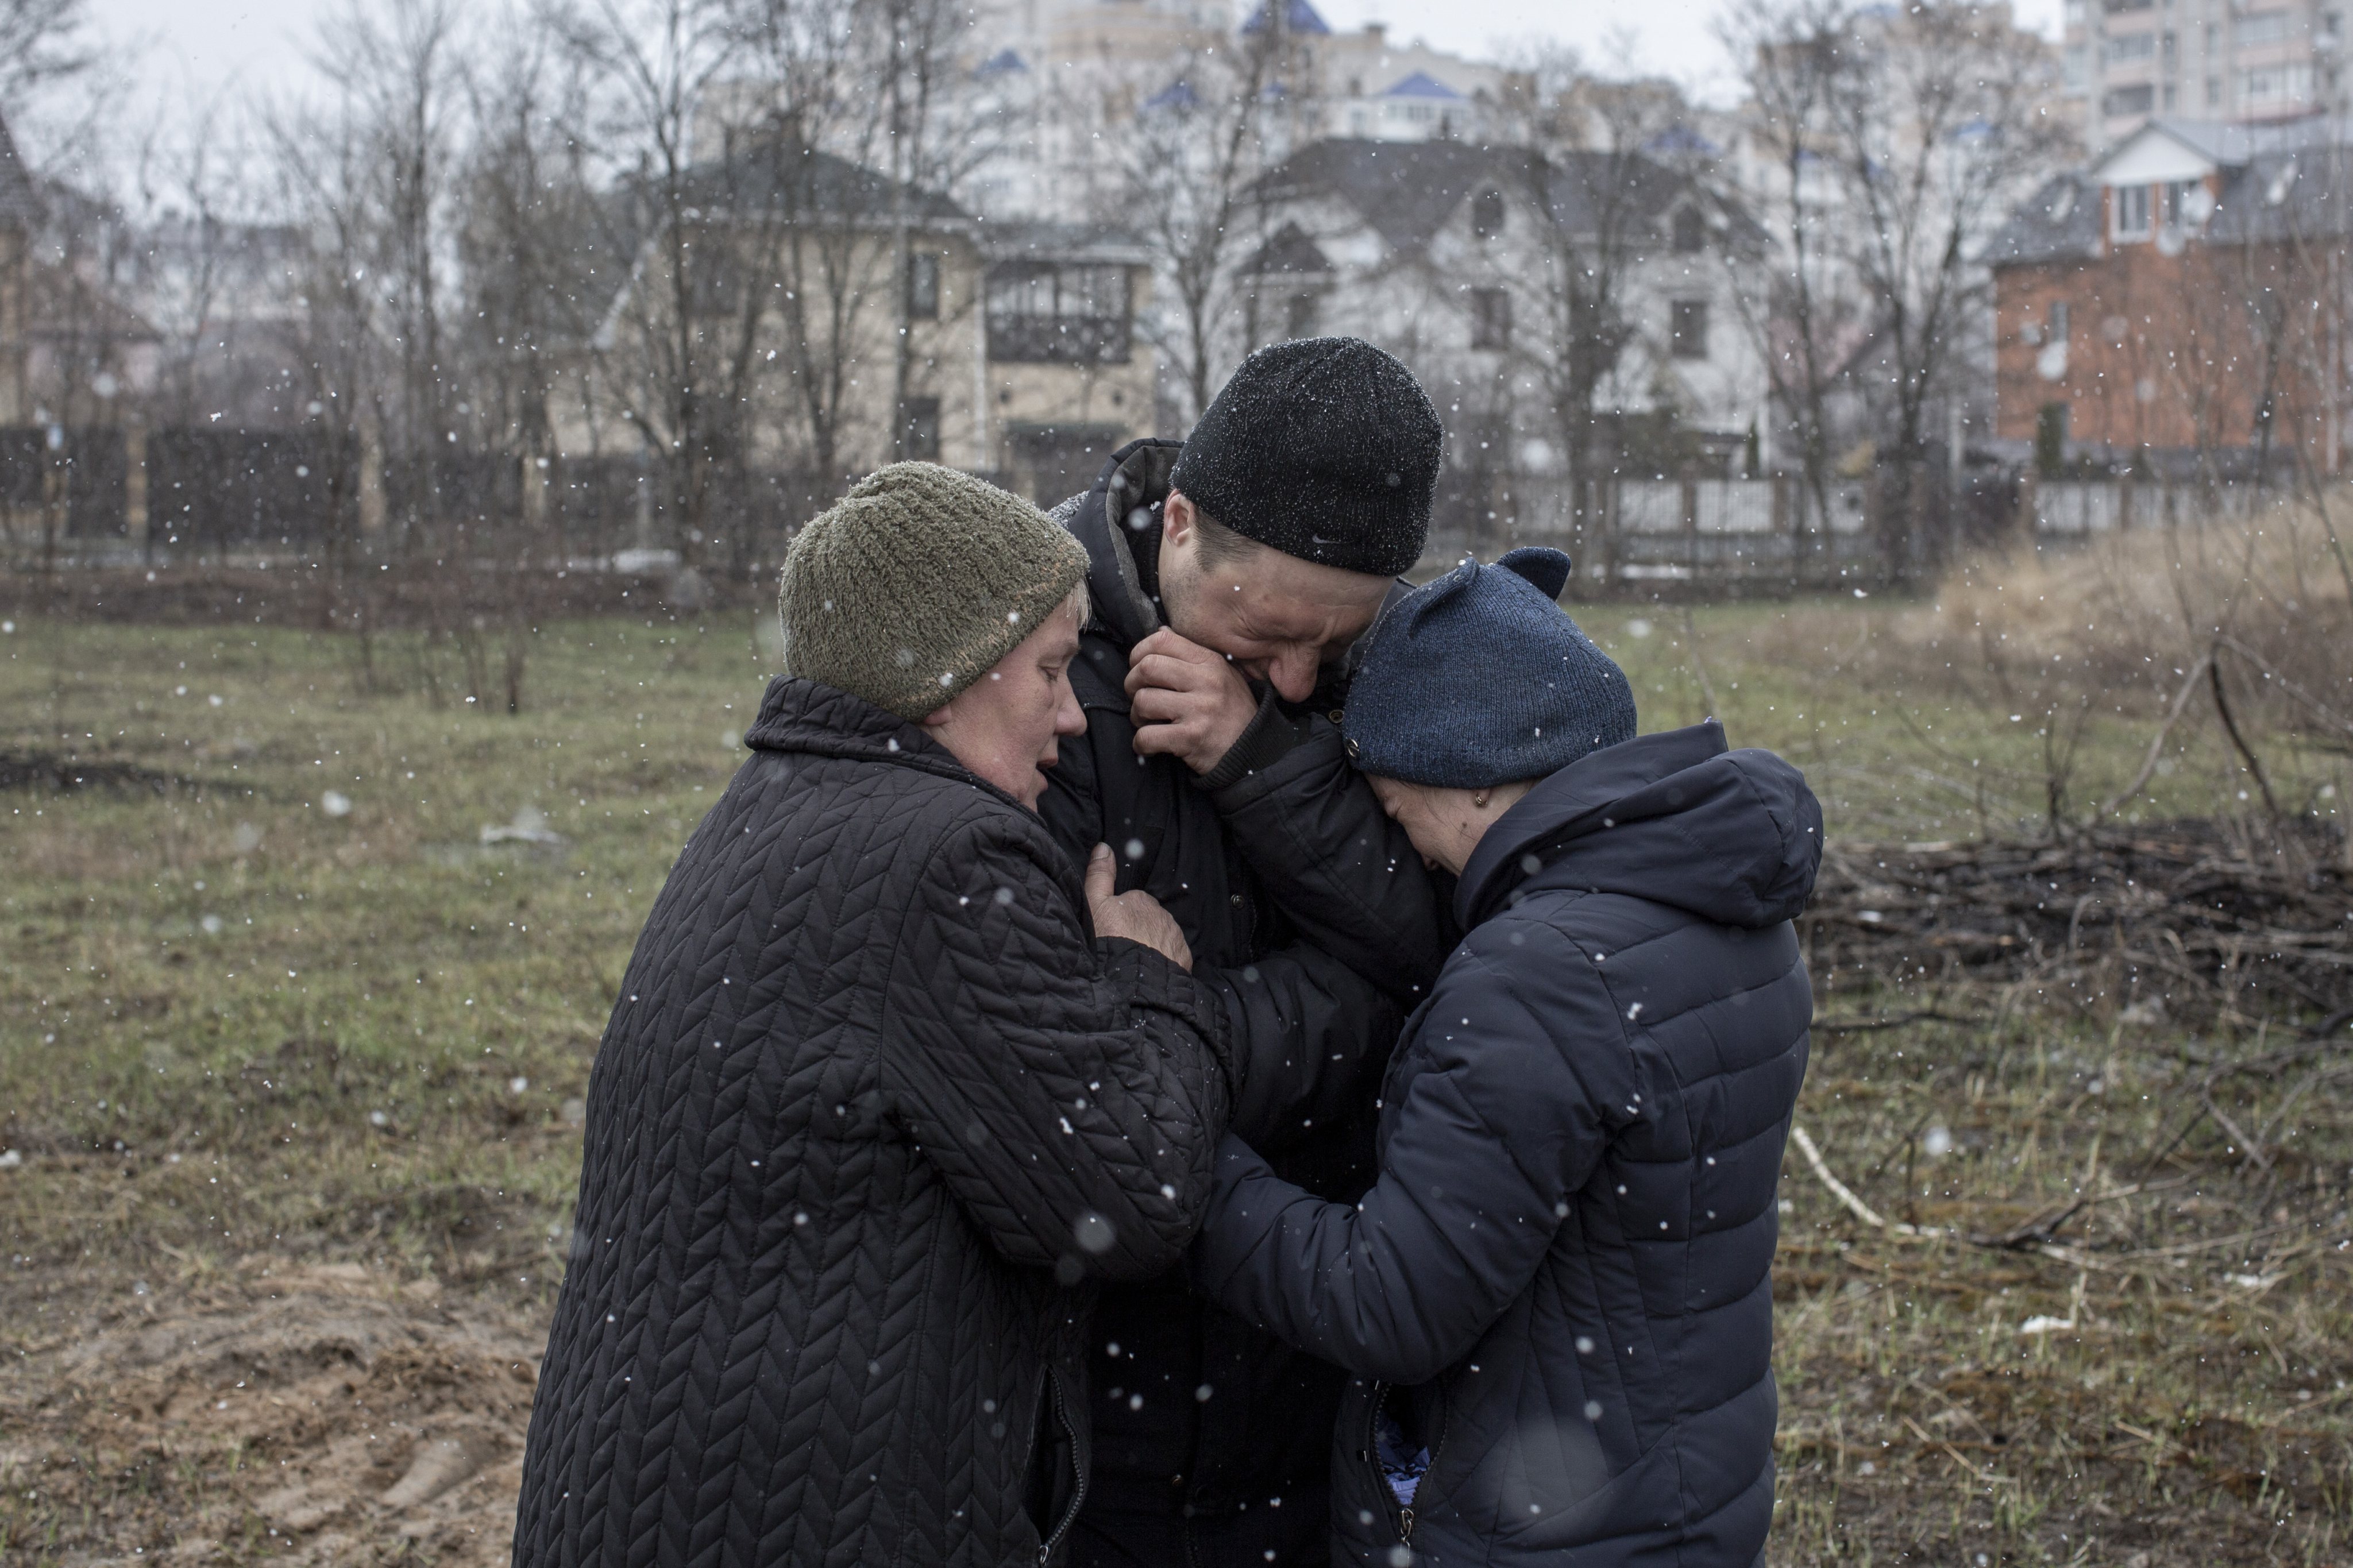 Devastation in Kyiv due to war